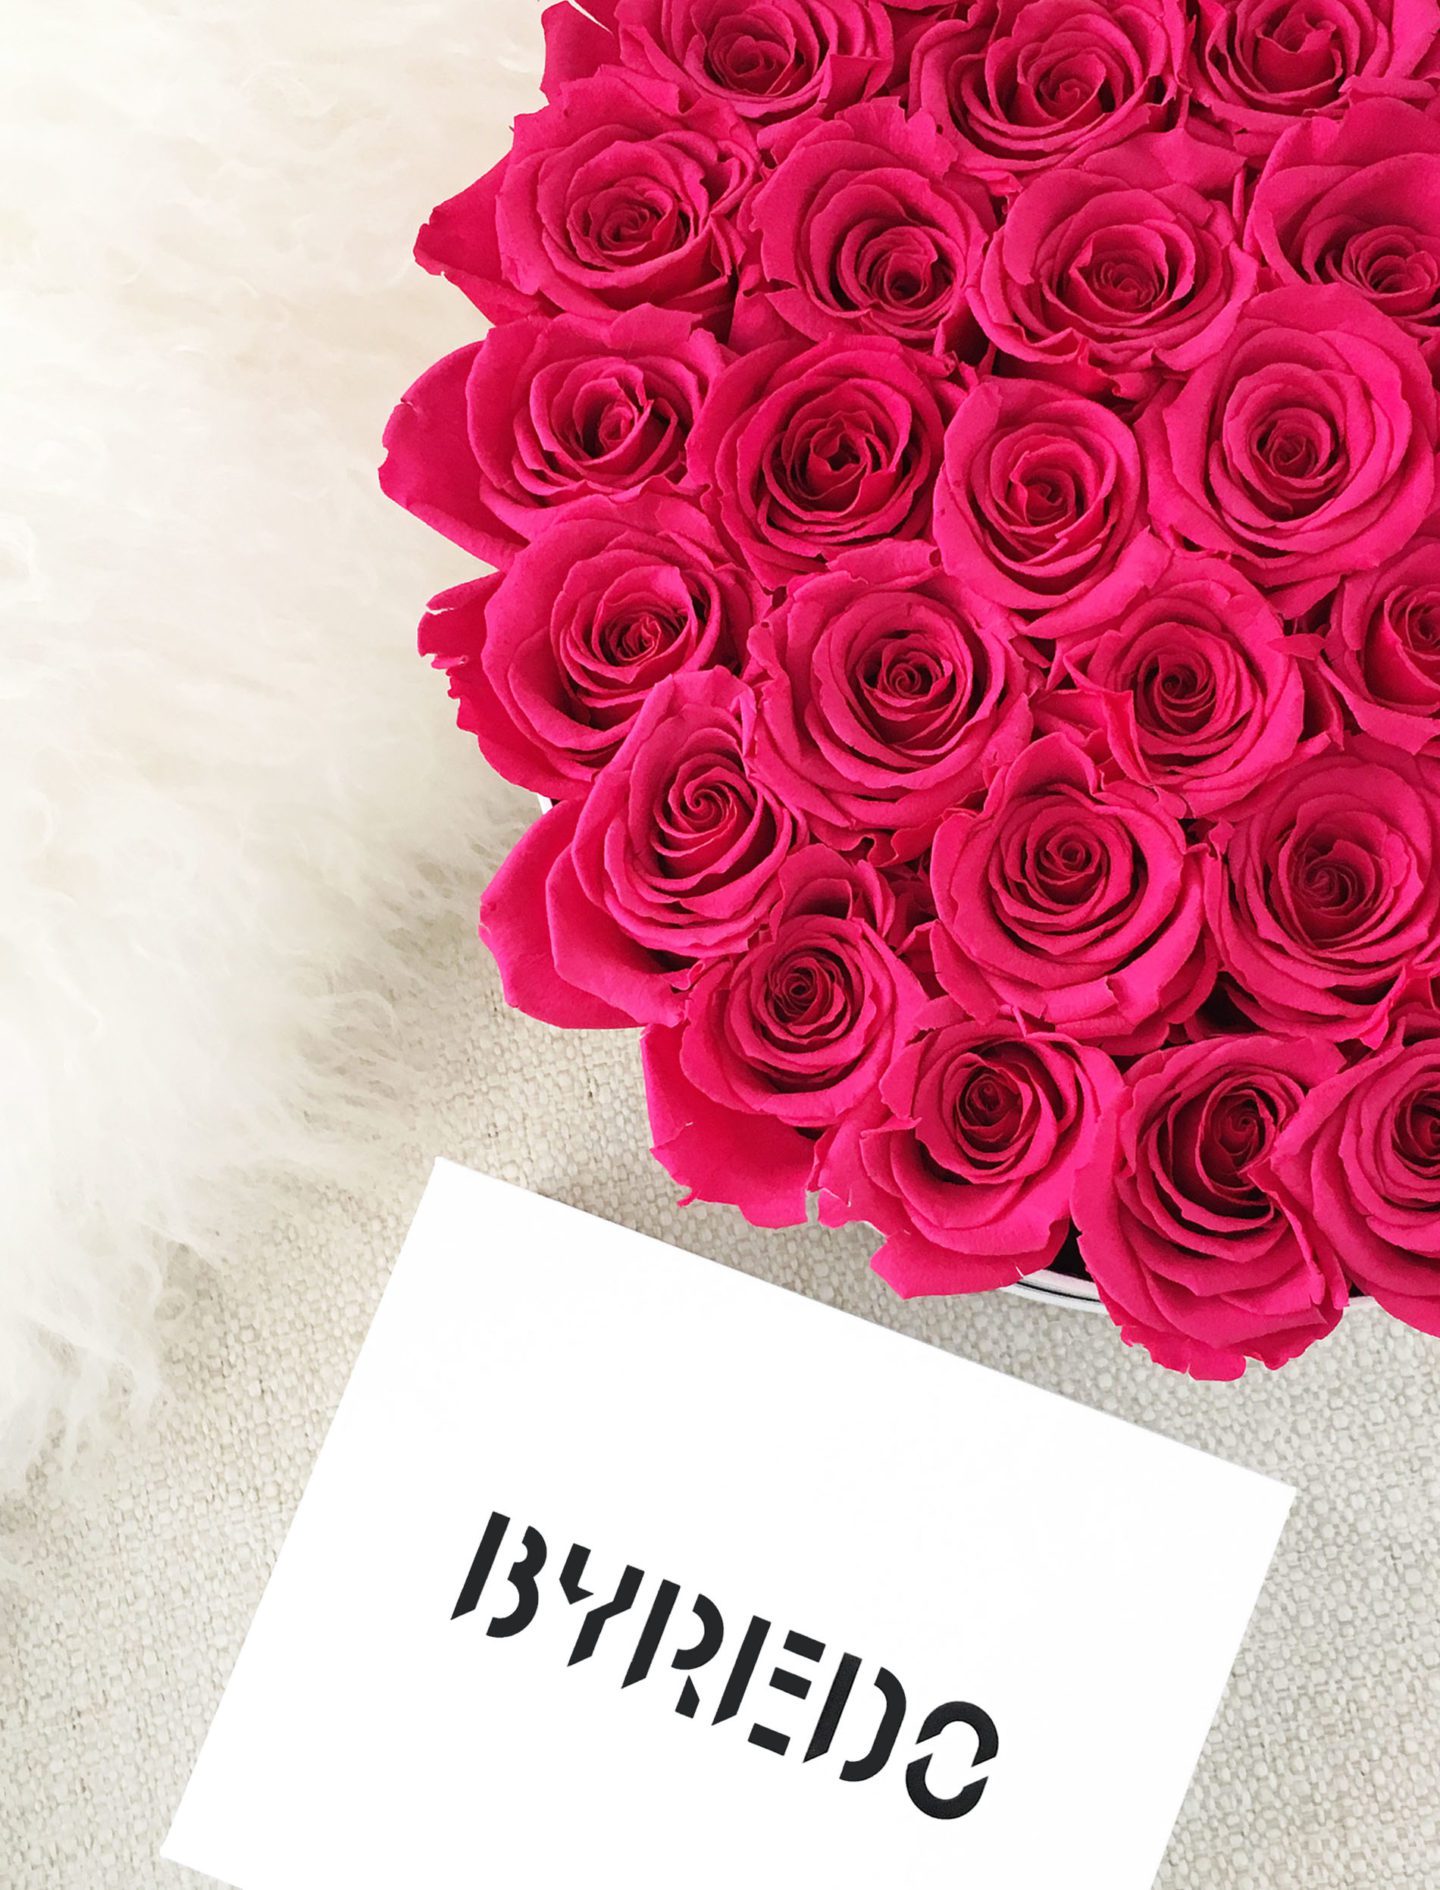 Byredo Box and Roses